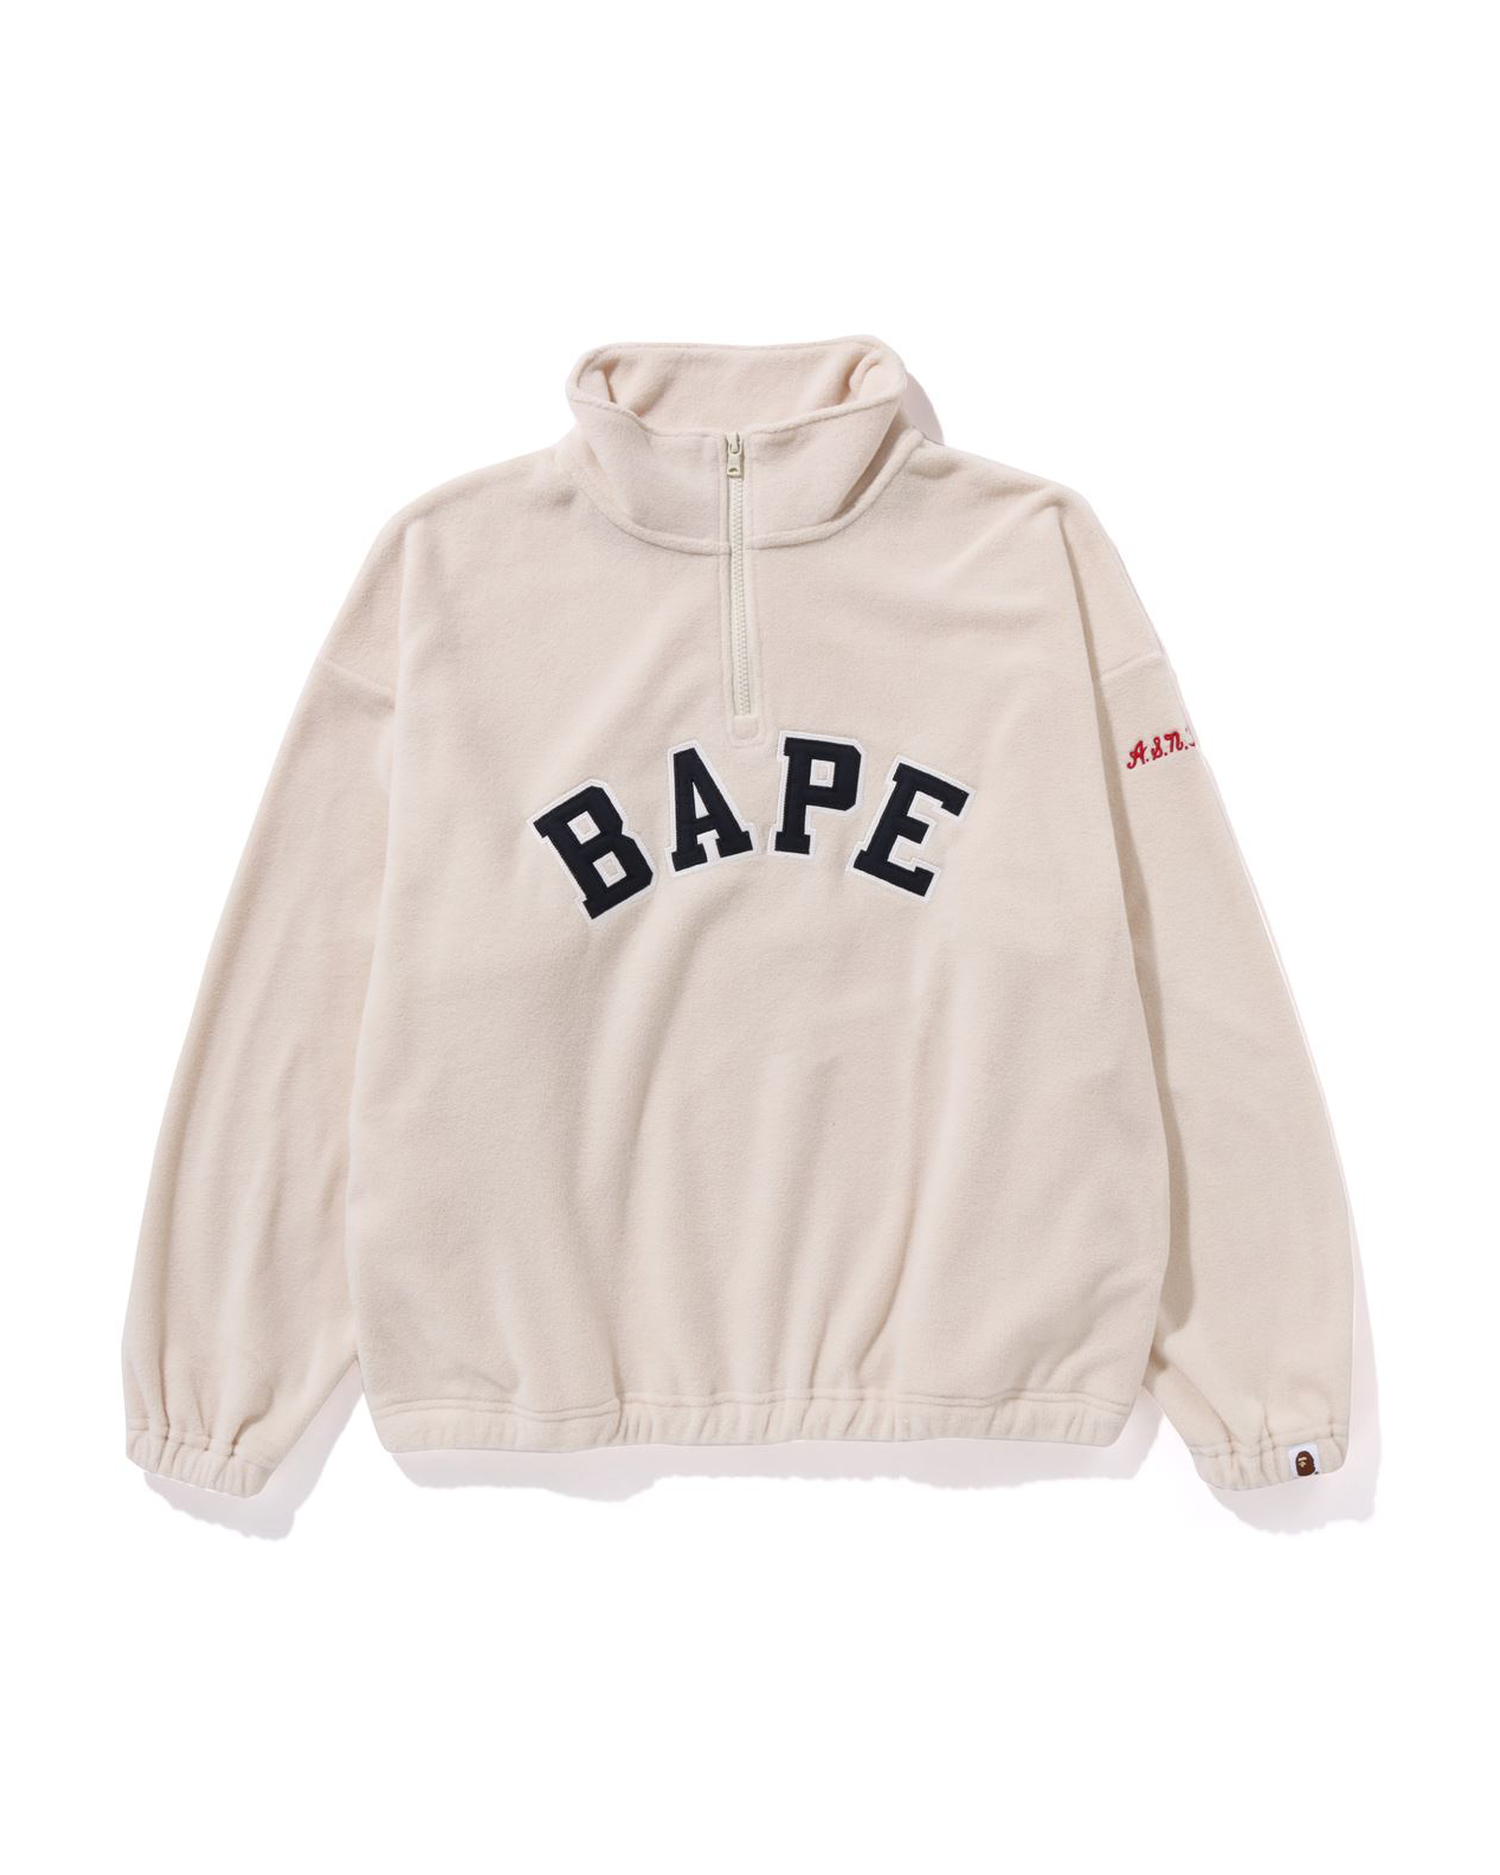 Shop BAPE Fleece Half Zip Online | BAPE